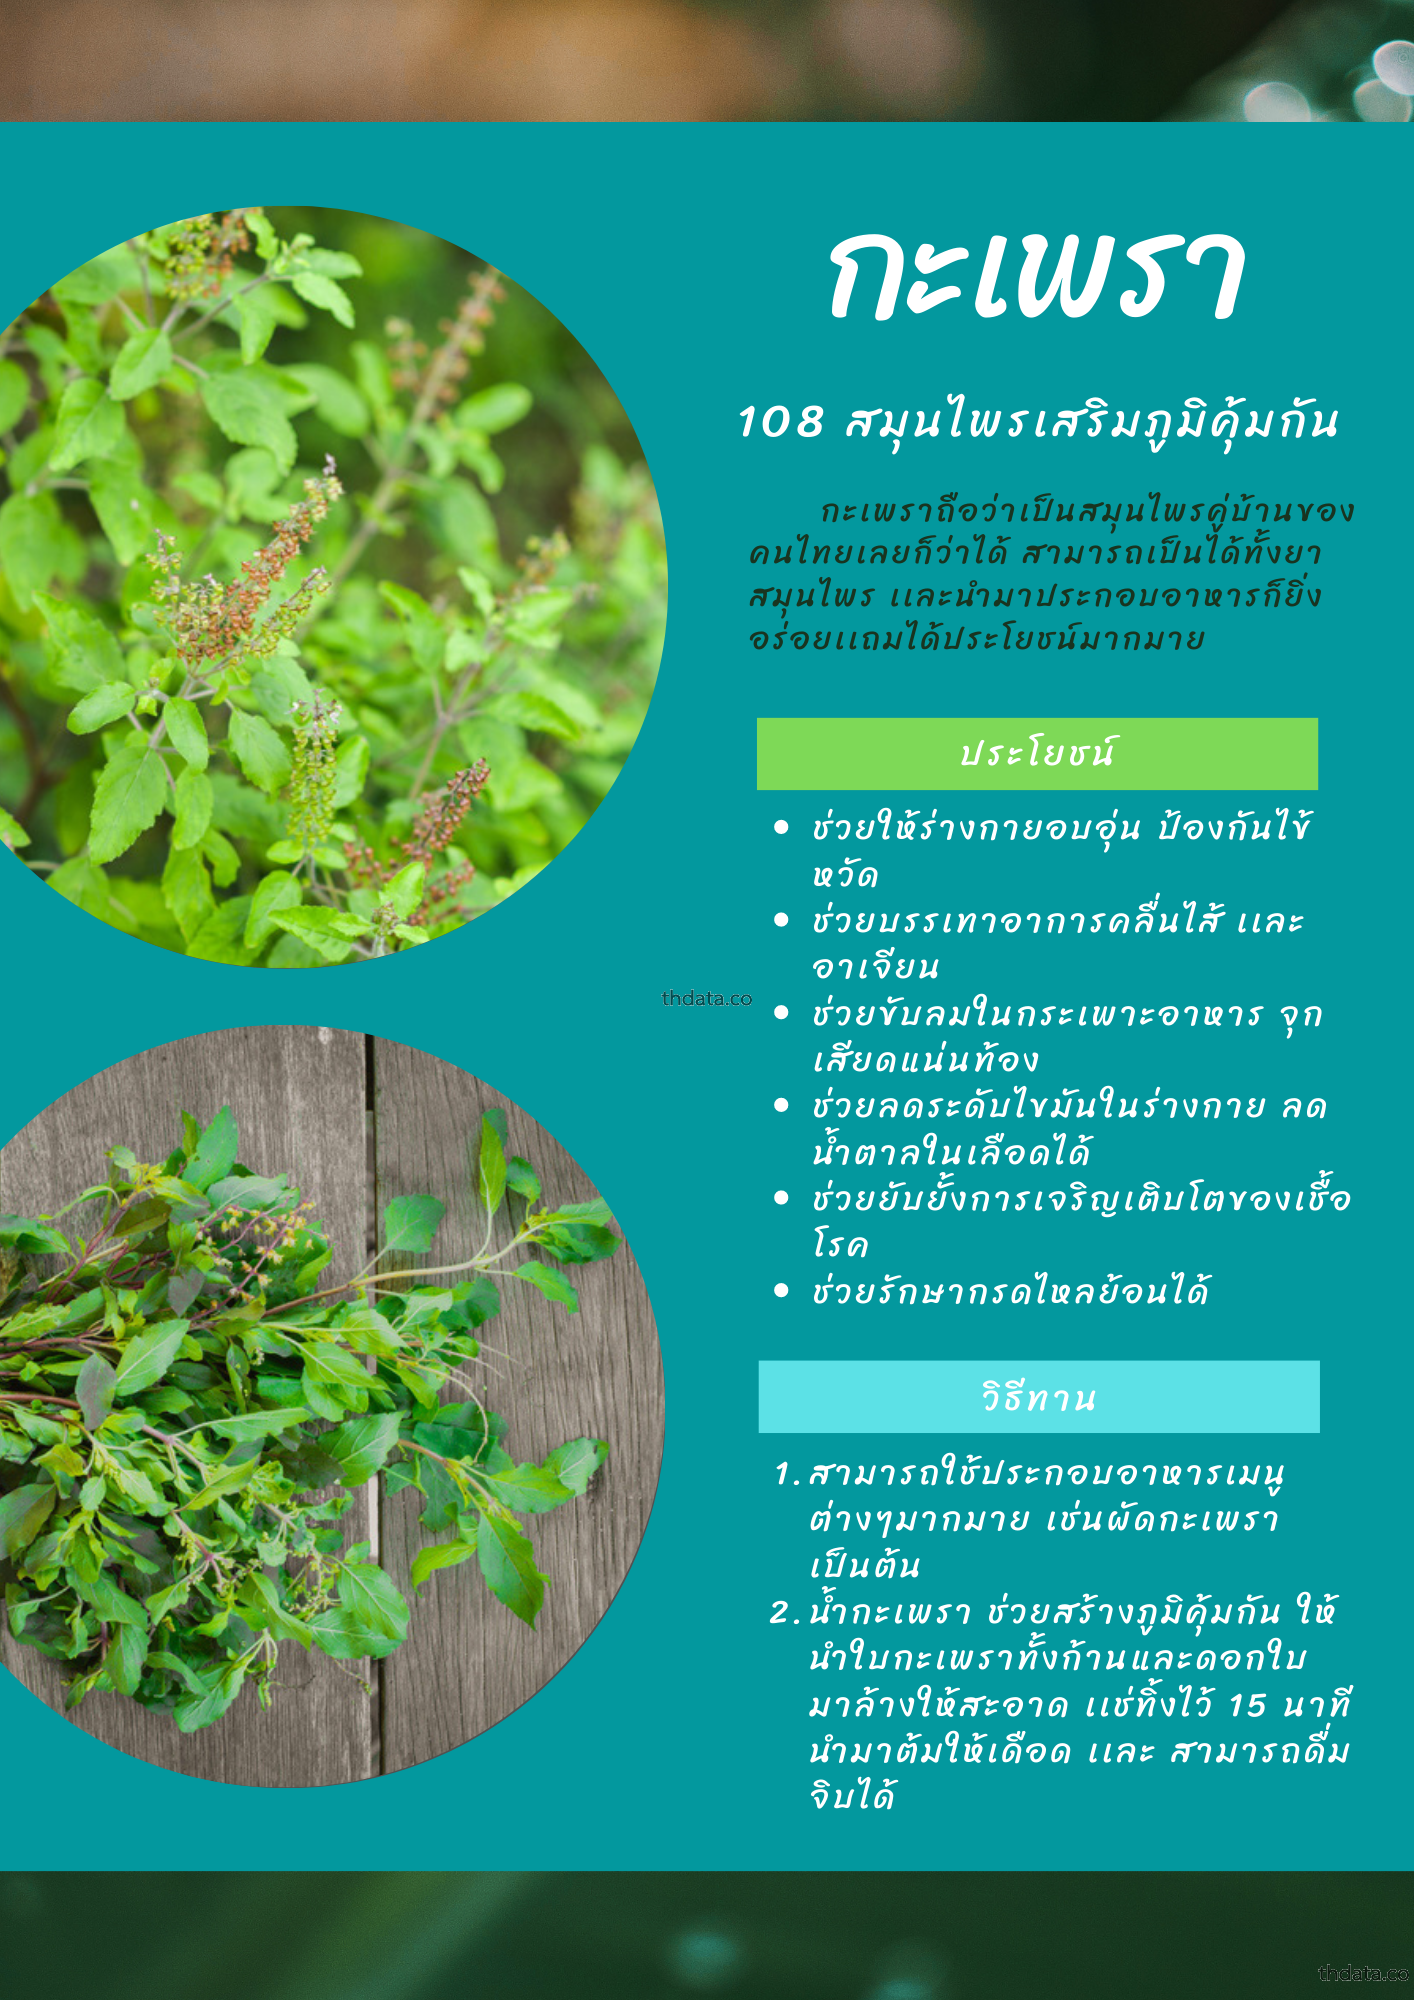 อื่นๆ ความรู้ทั่วไป  thai-herbs.thdata.co thdata.co